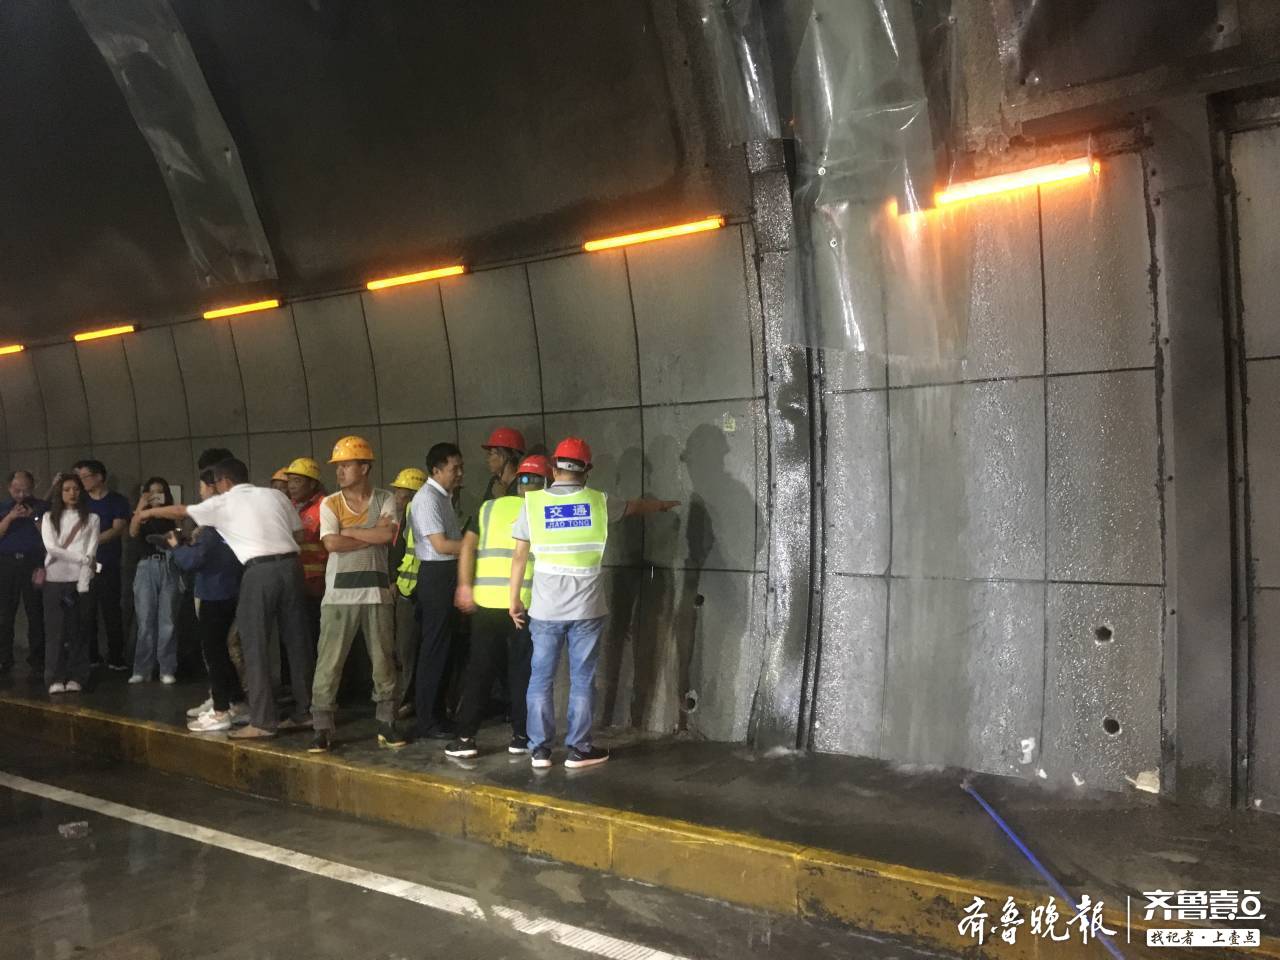 强降雨影响济南开元隧道出现局部渗水目前全部漏水点完成导流